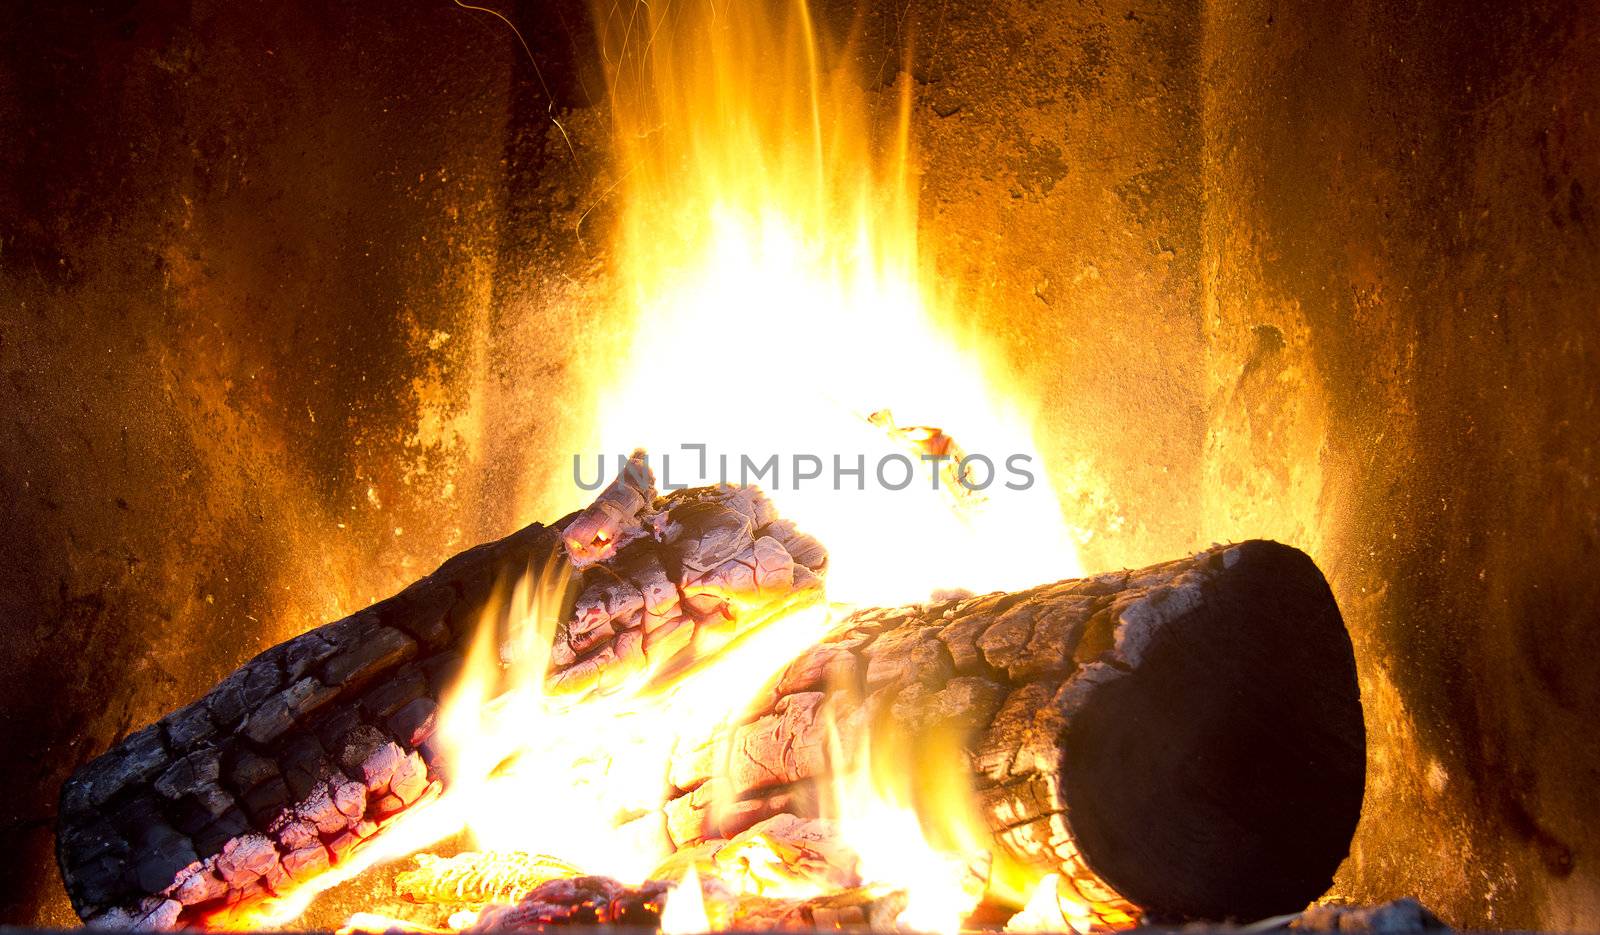 fireplace by danilobiancalana